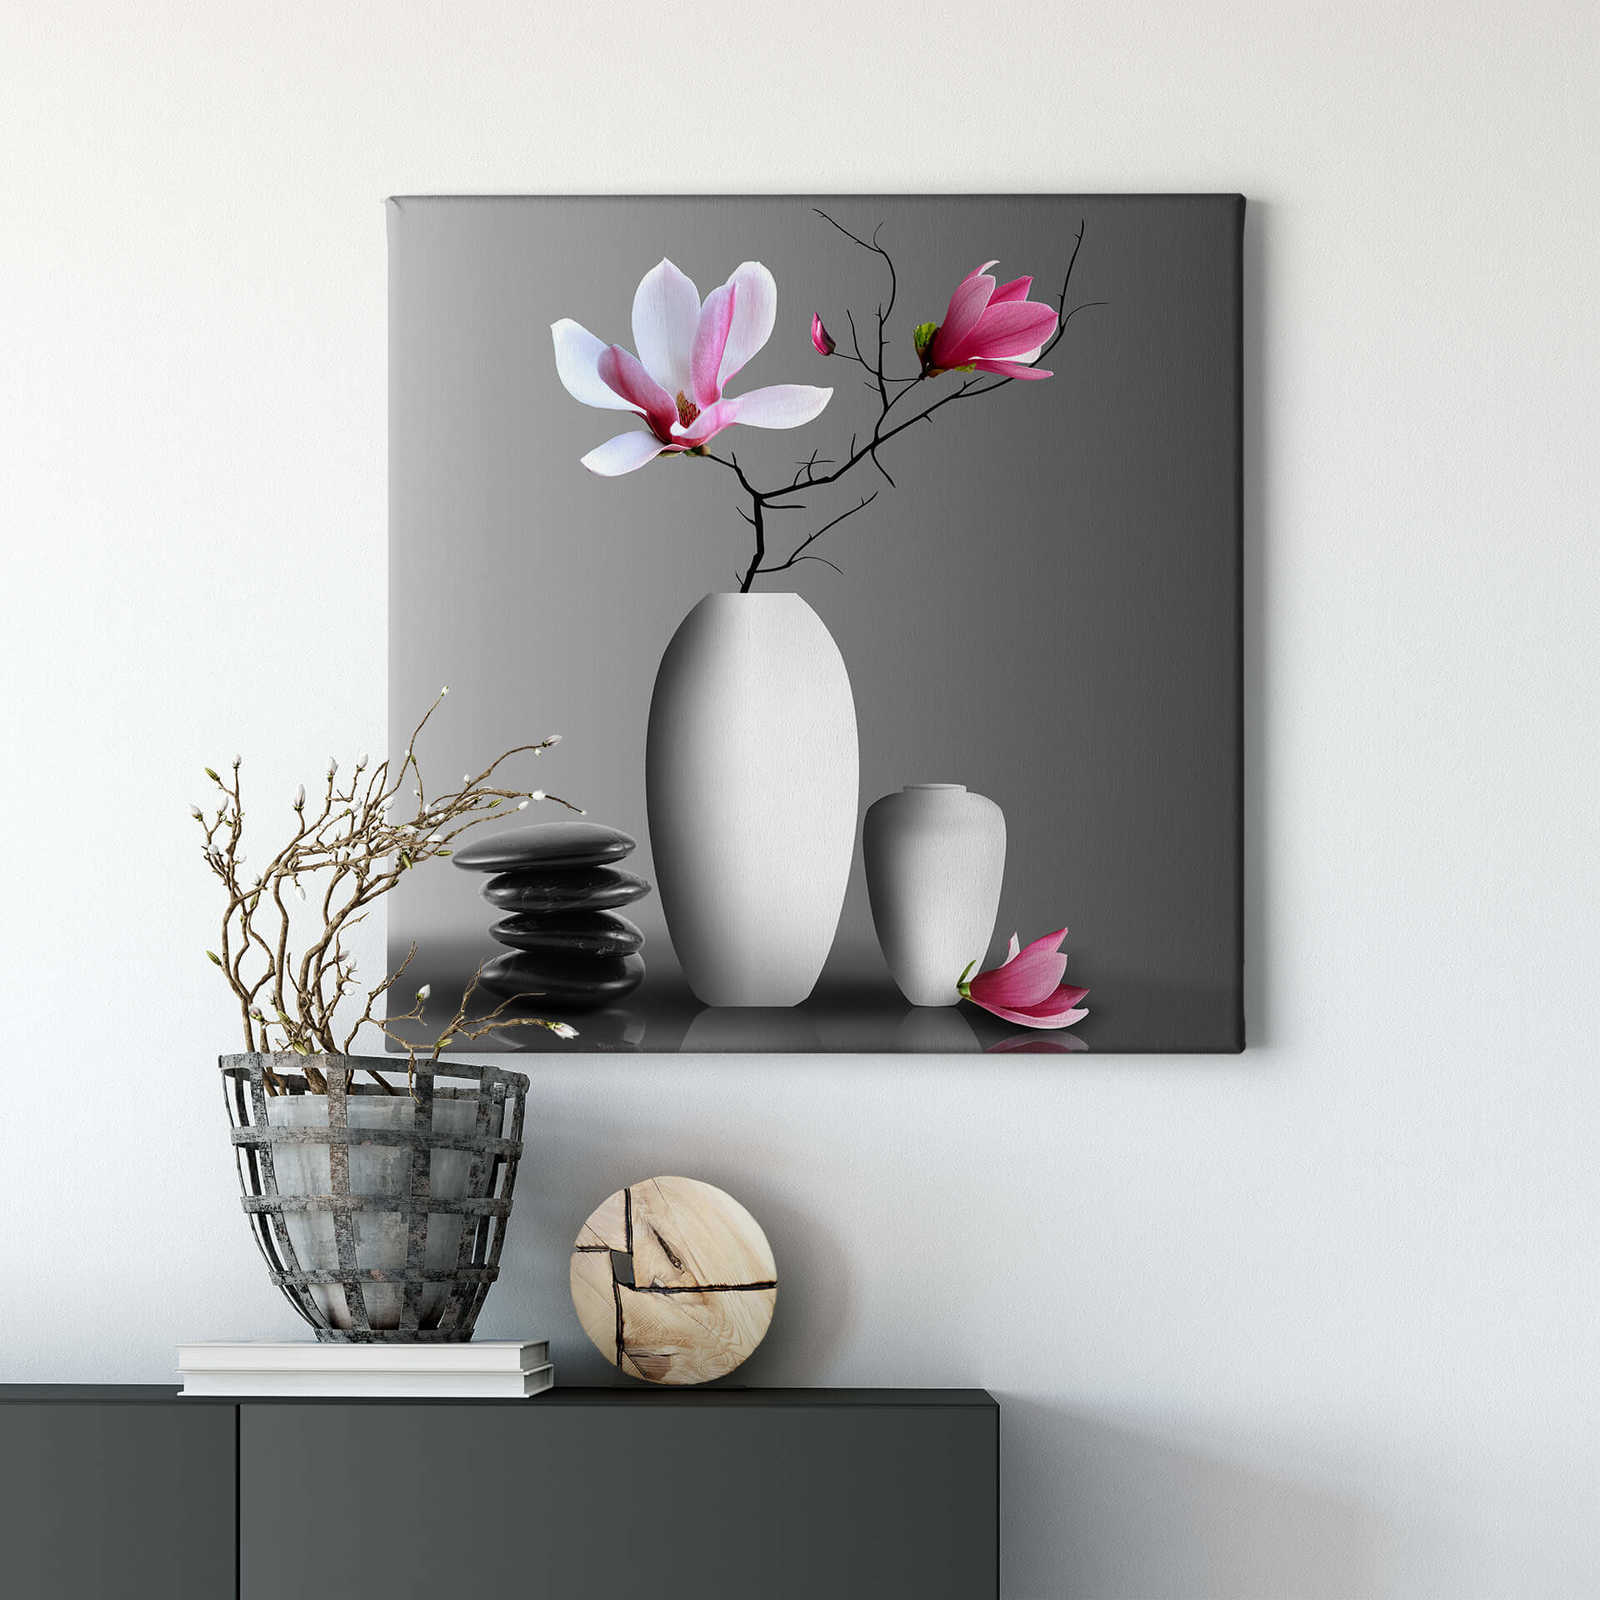             Square canvas print magnolia branch – pink, white
        